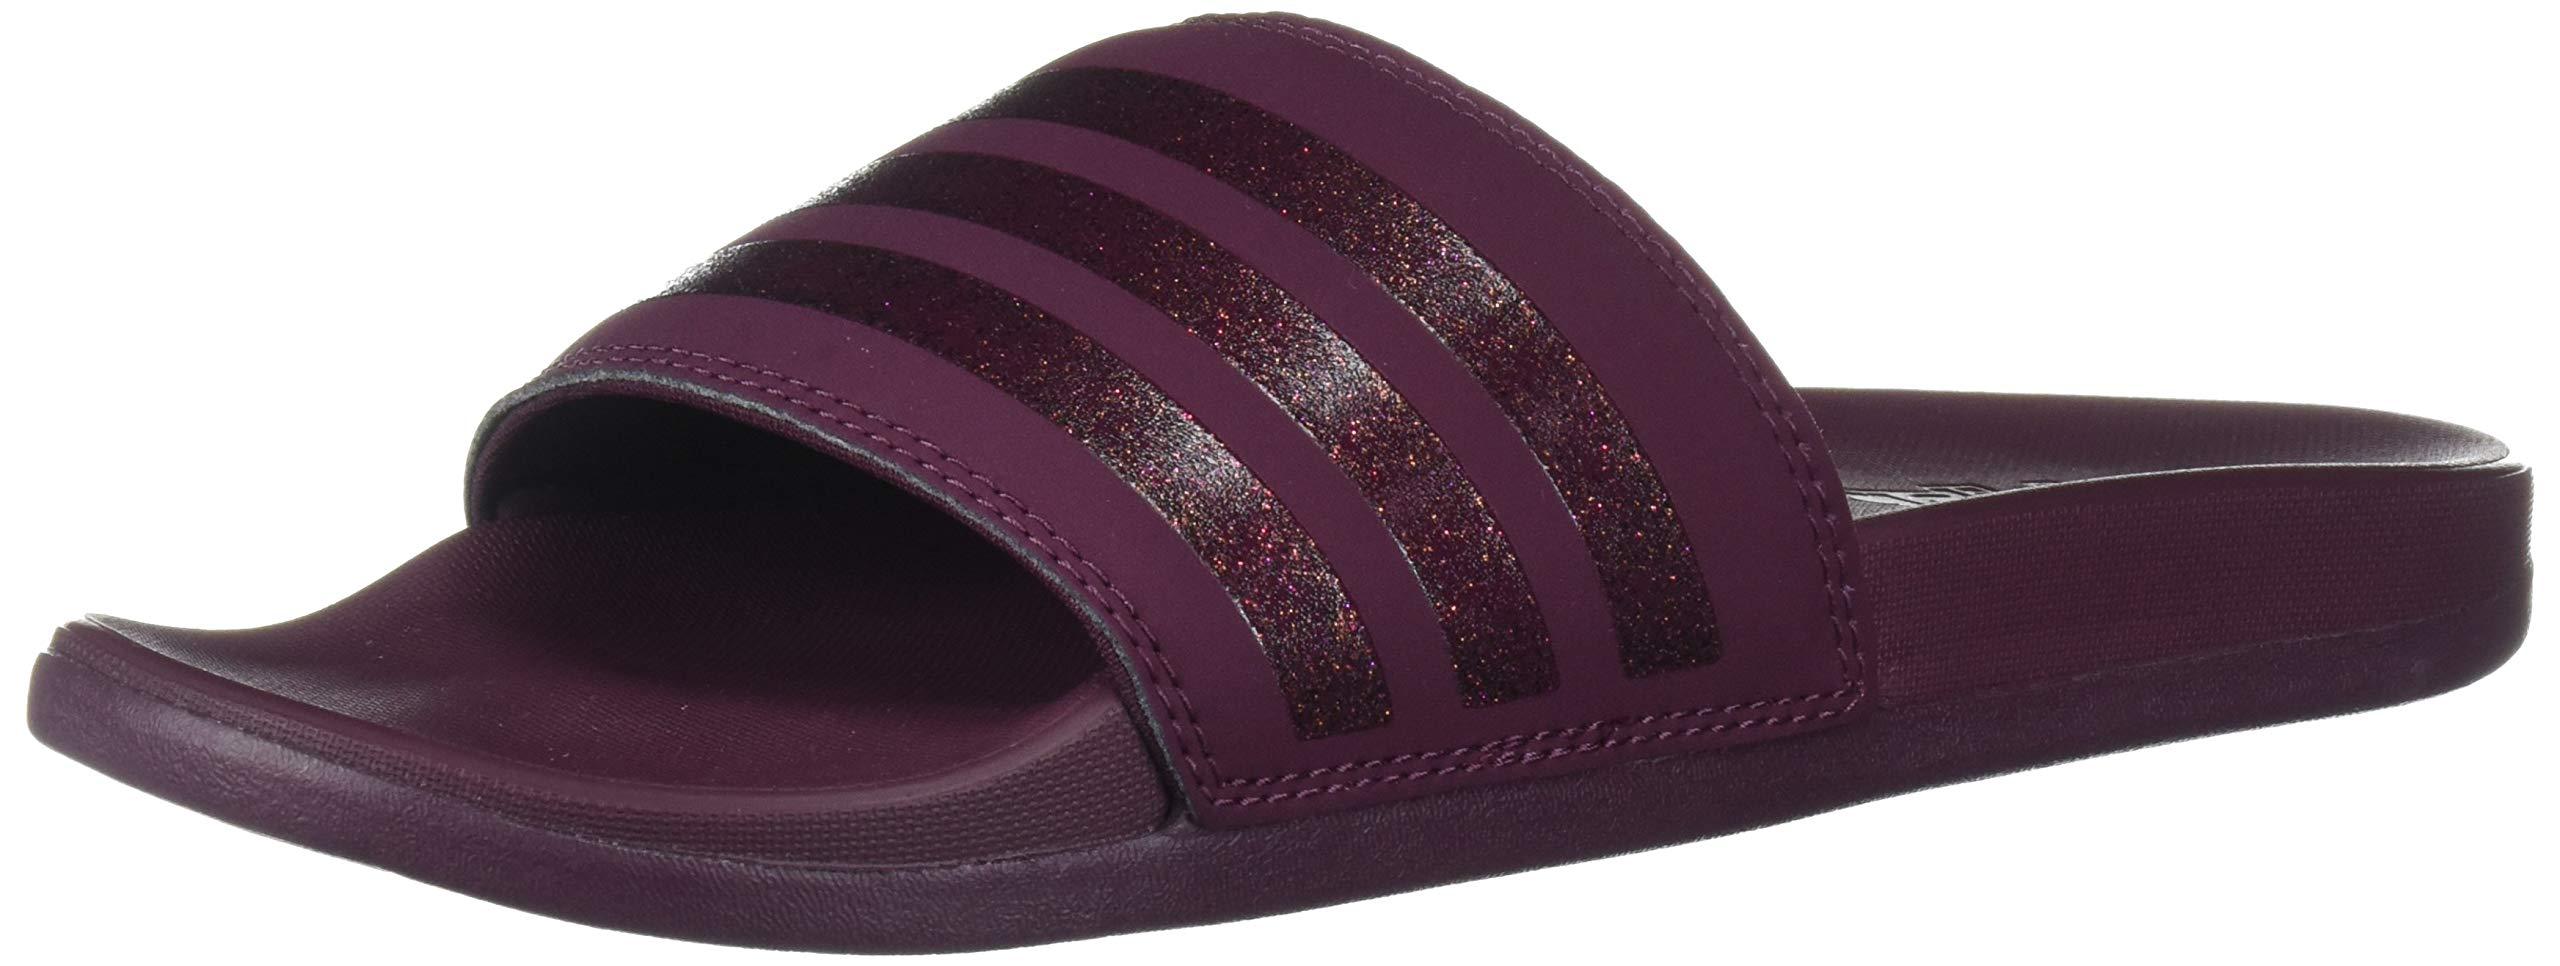 adidas Synthetic Adilette Comfort Slip-on Swim Slides in Maroon/ Maroon/  Maroon (Purple) - Lyst